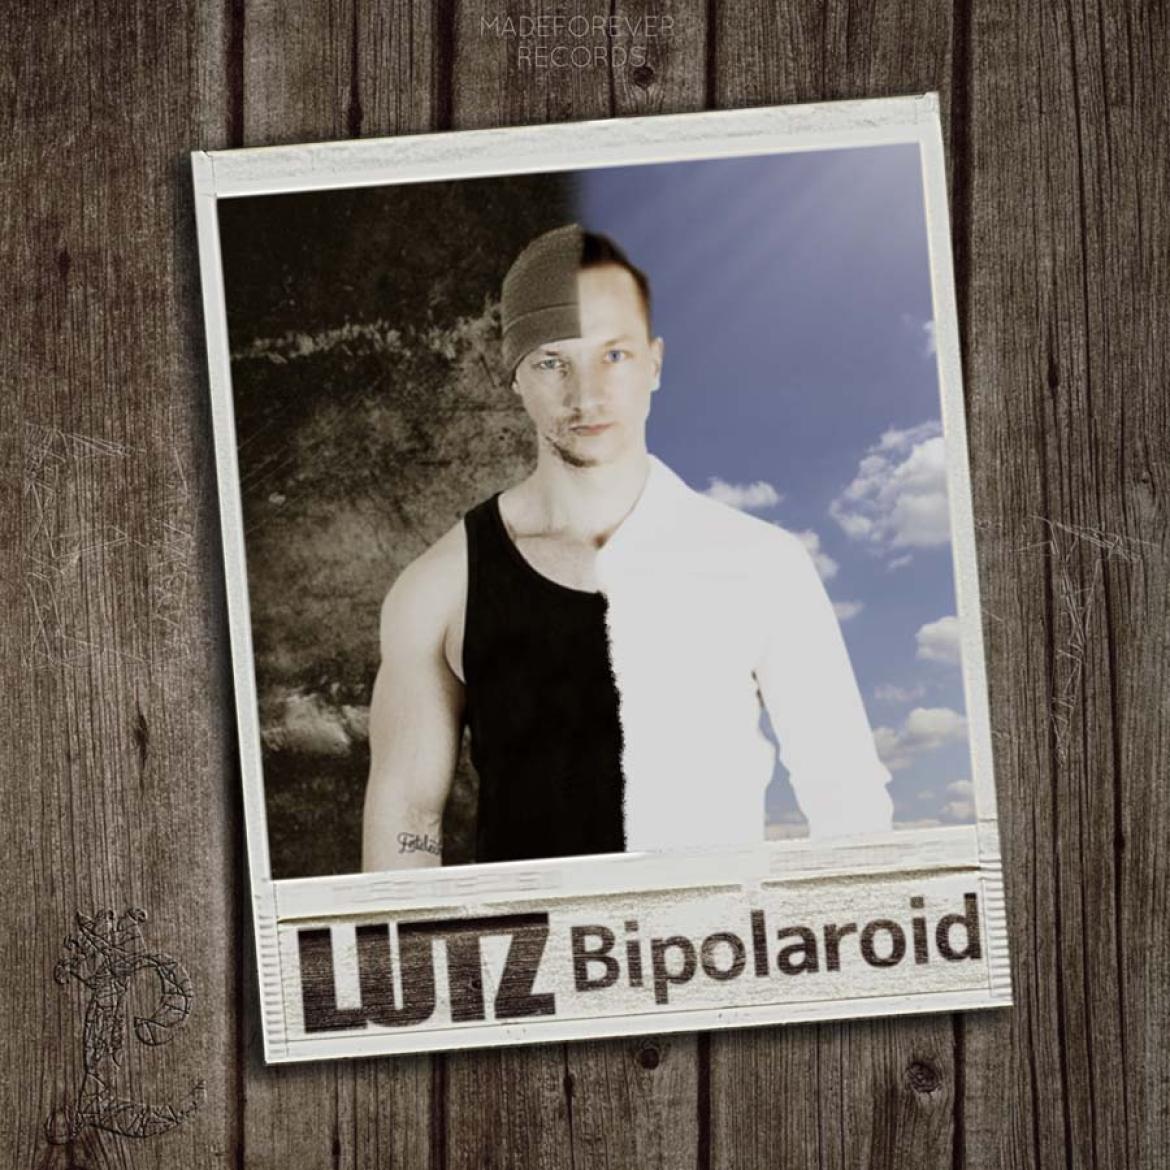 L.U.T.Z Bipolaroid